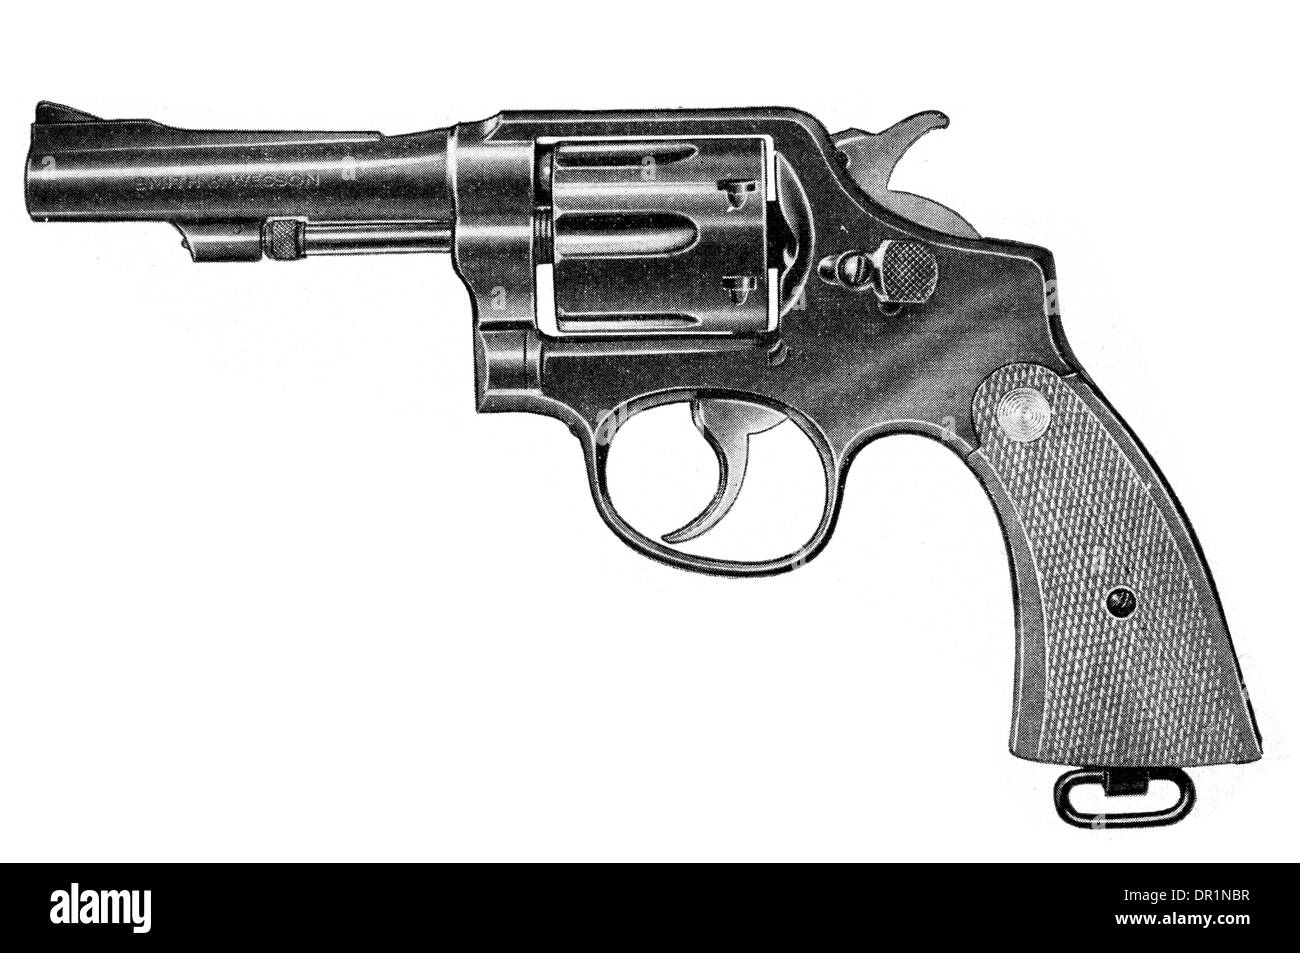 Smith et Wesson Revolver militaire et policière avec calibre 38 canon raccourcie Banque D'Images